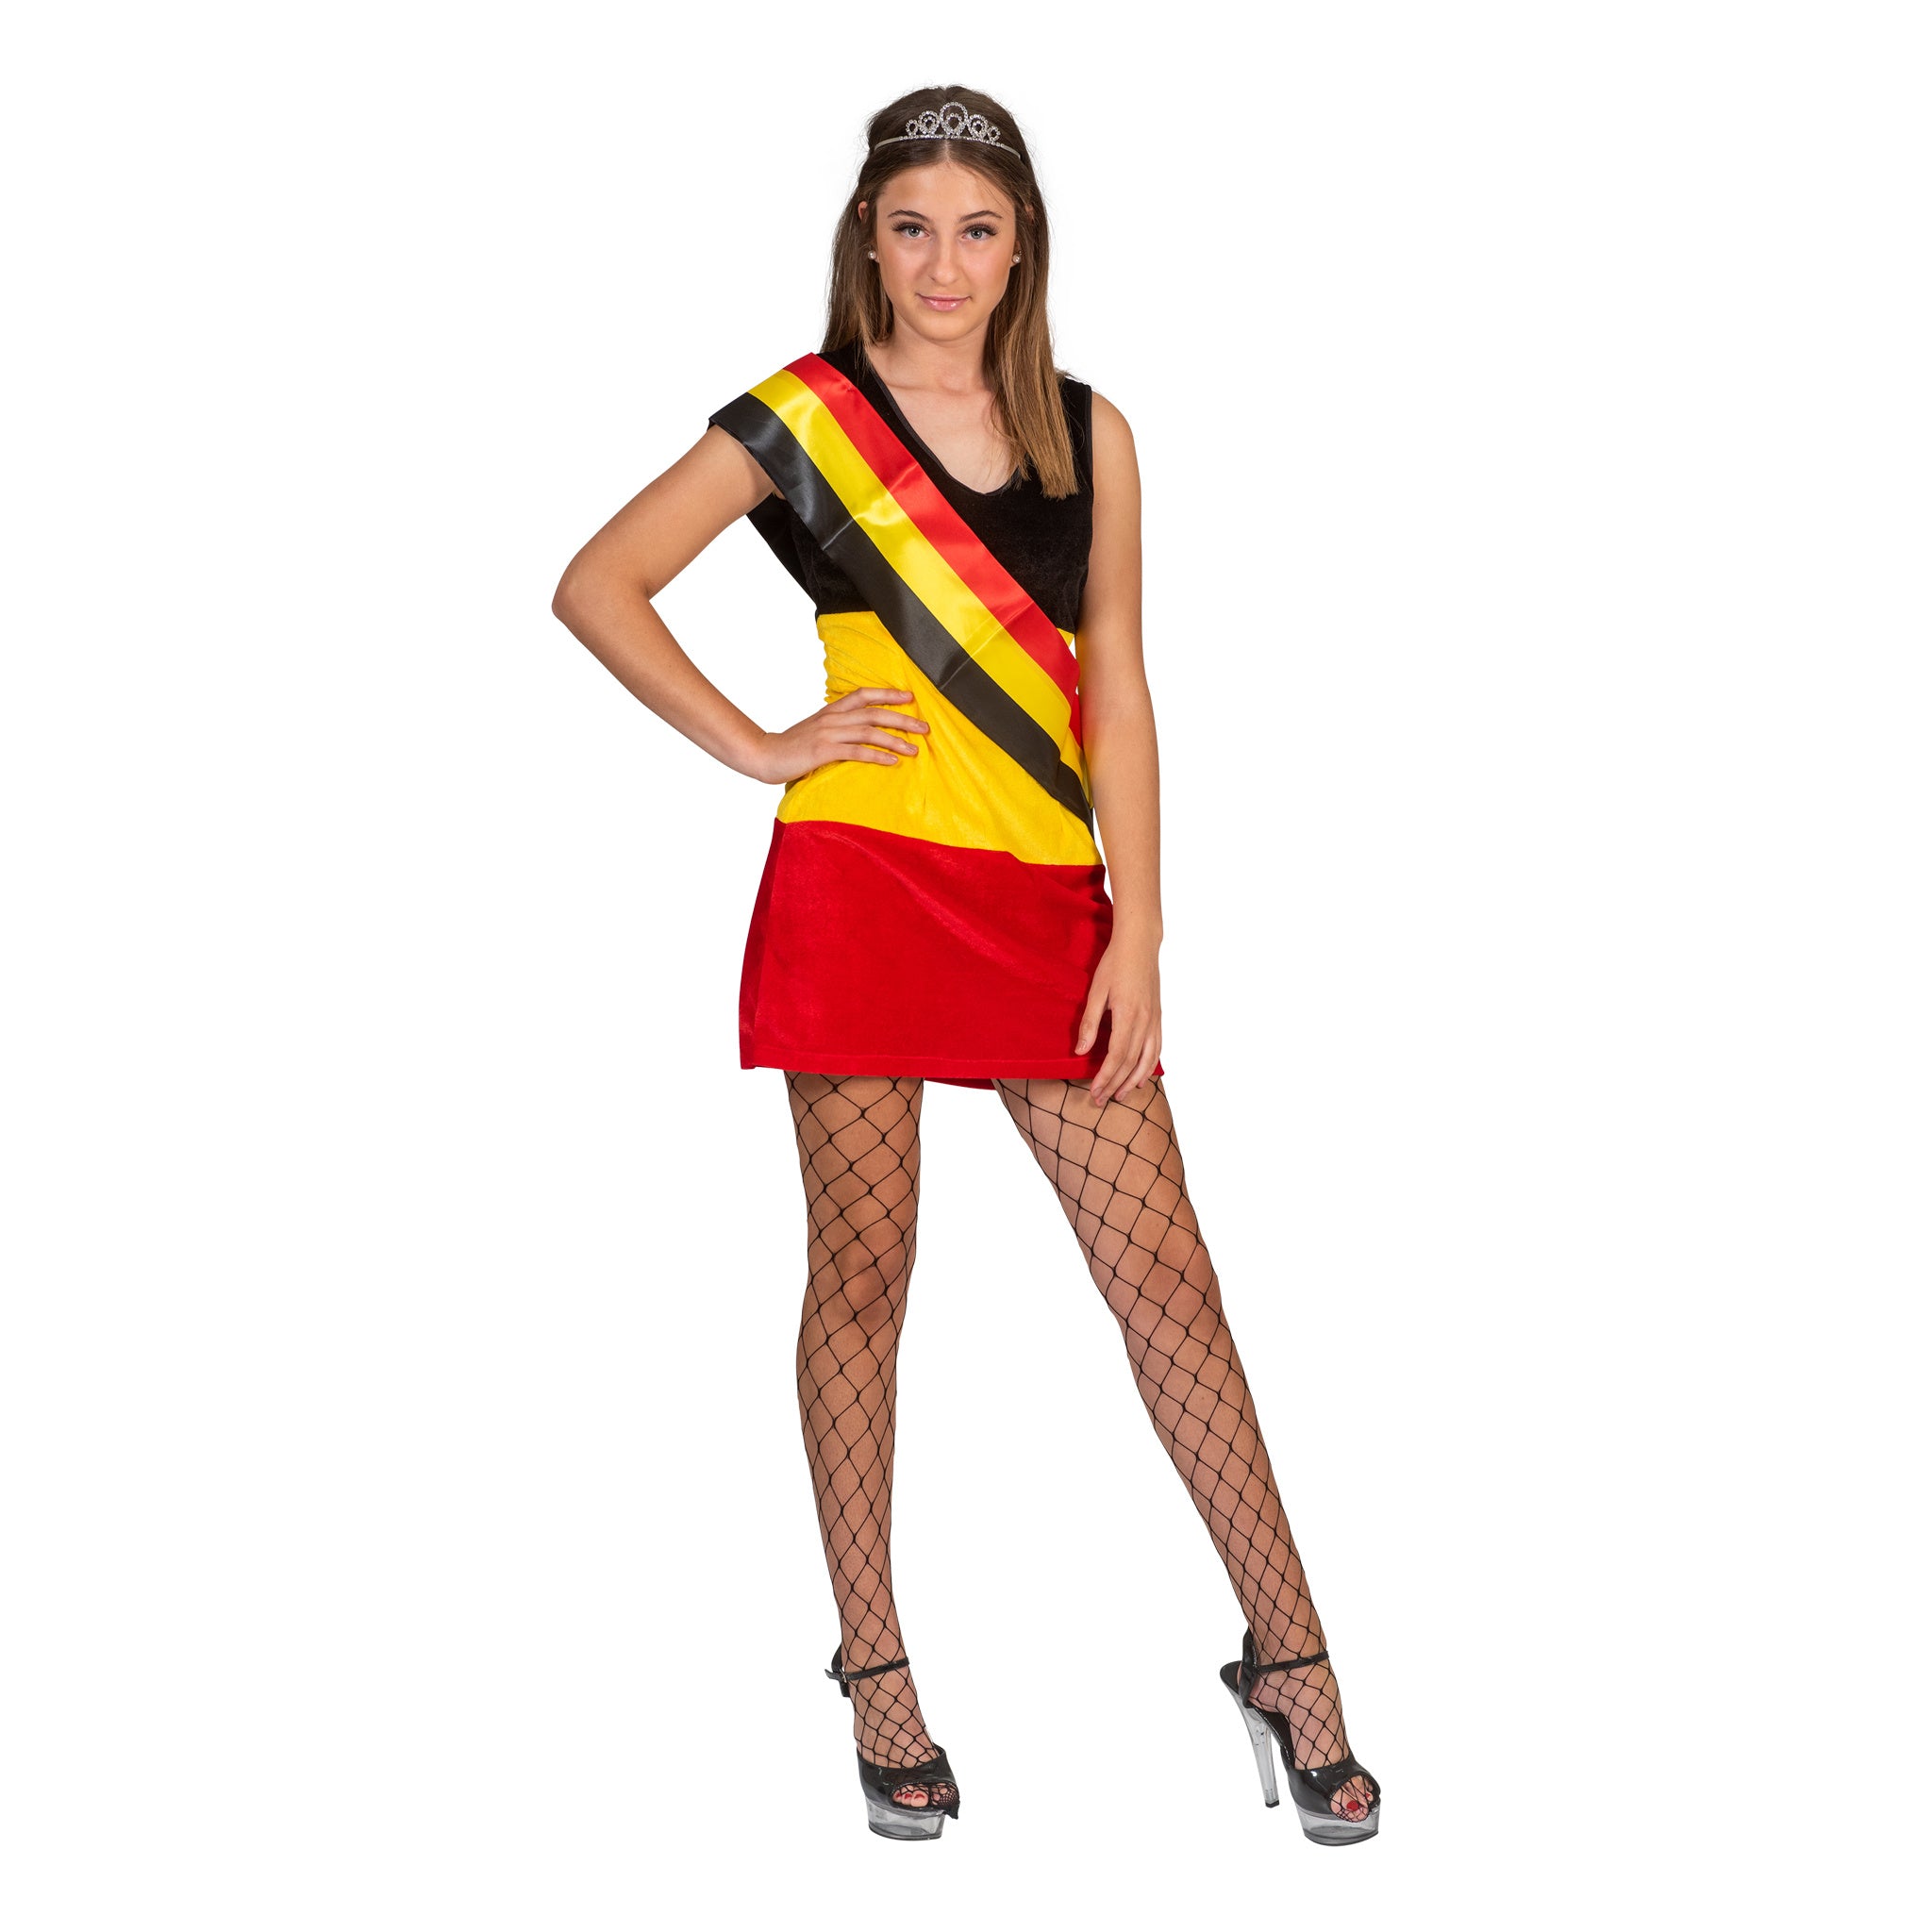 Hippe jurk in de Belgischee vlag kleuren